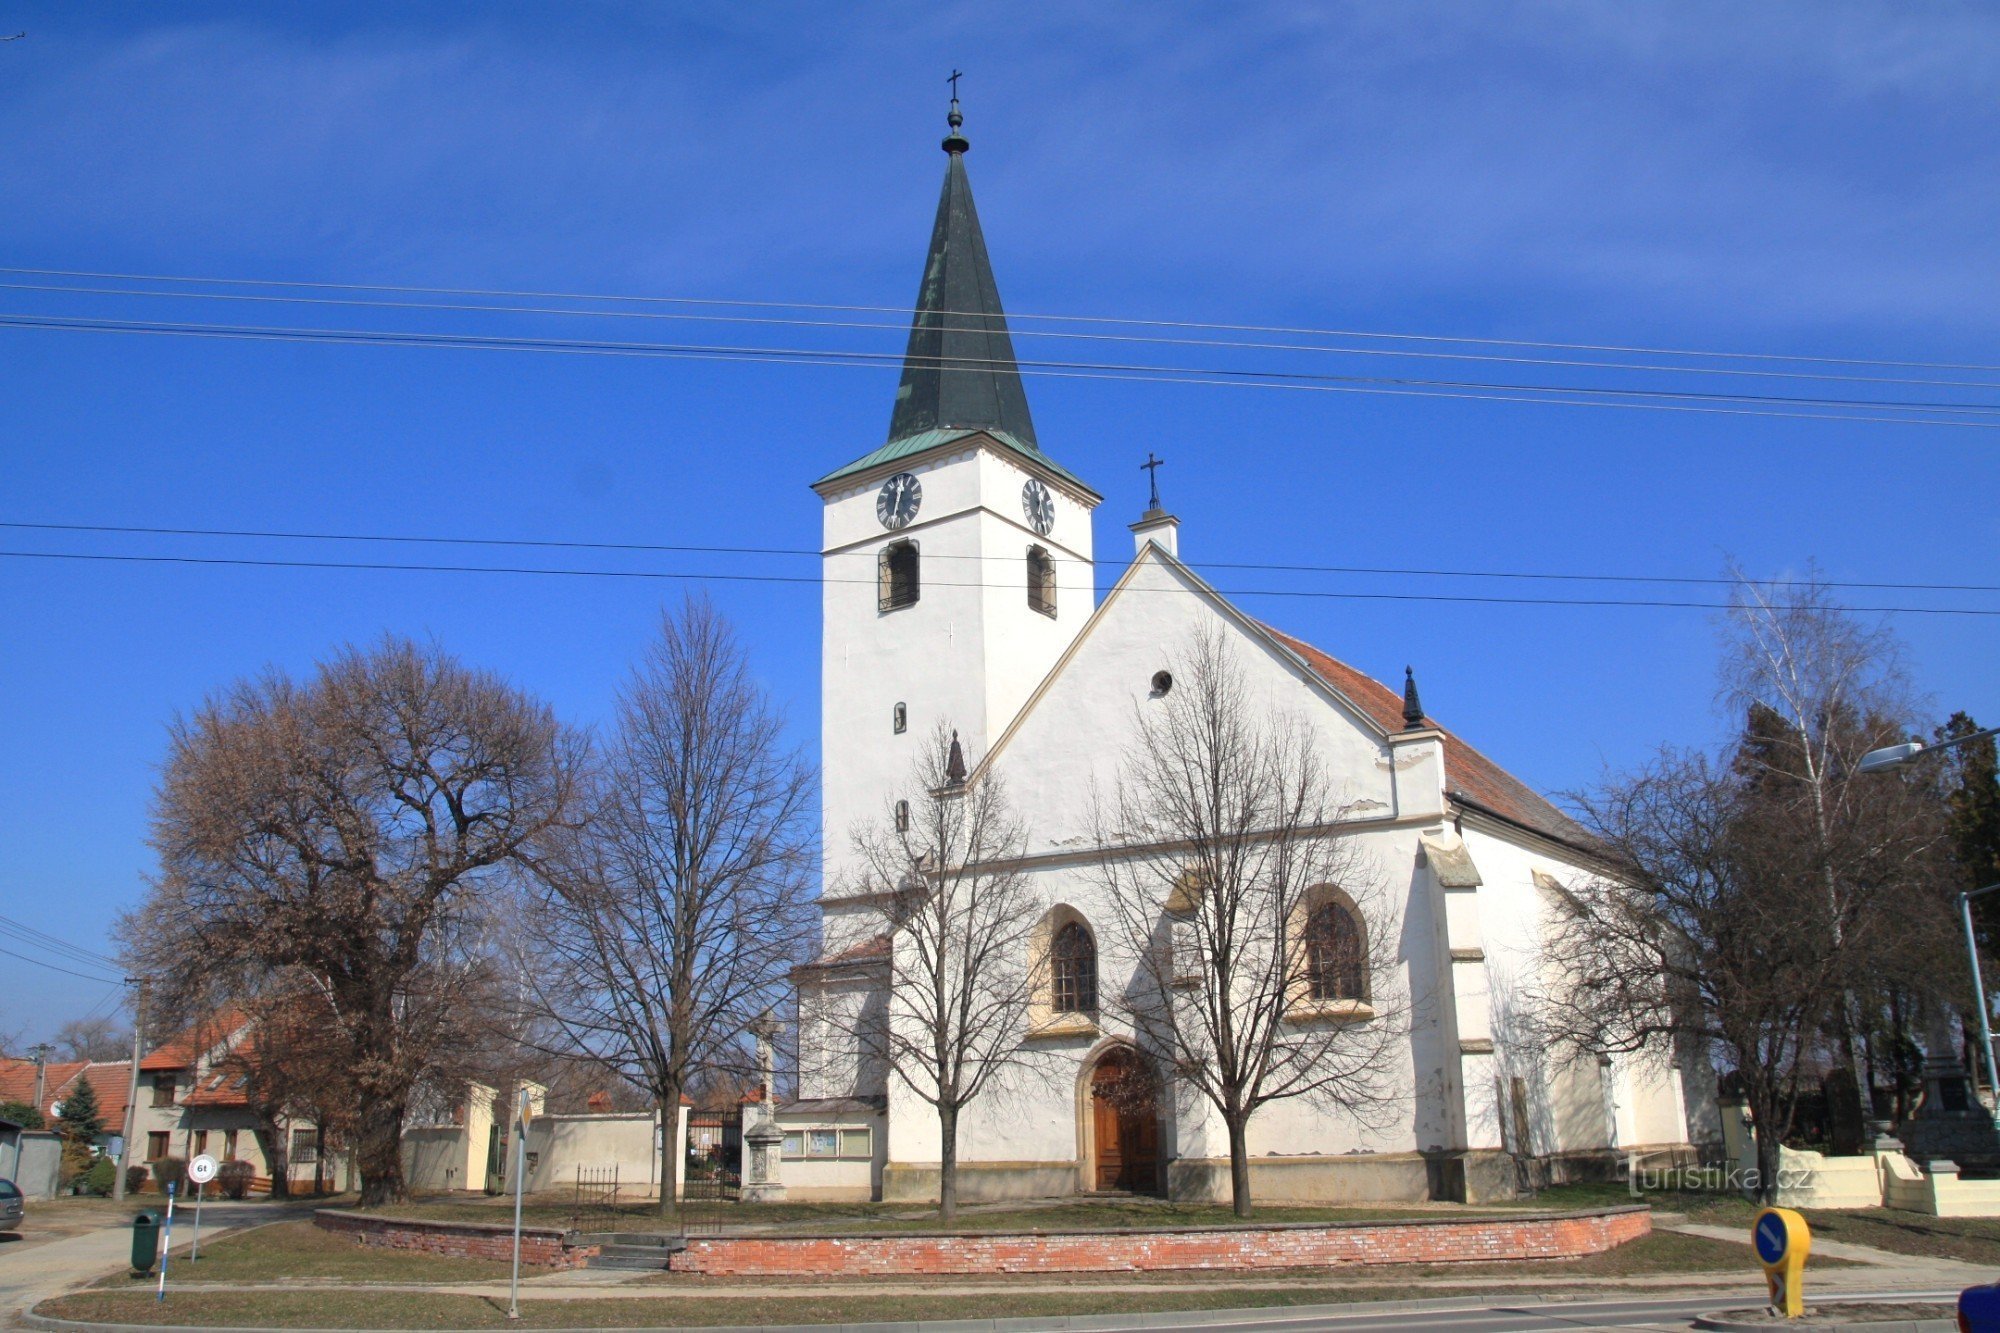 Церковь св. Vavřince на улице Hlavní ulica